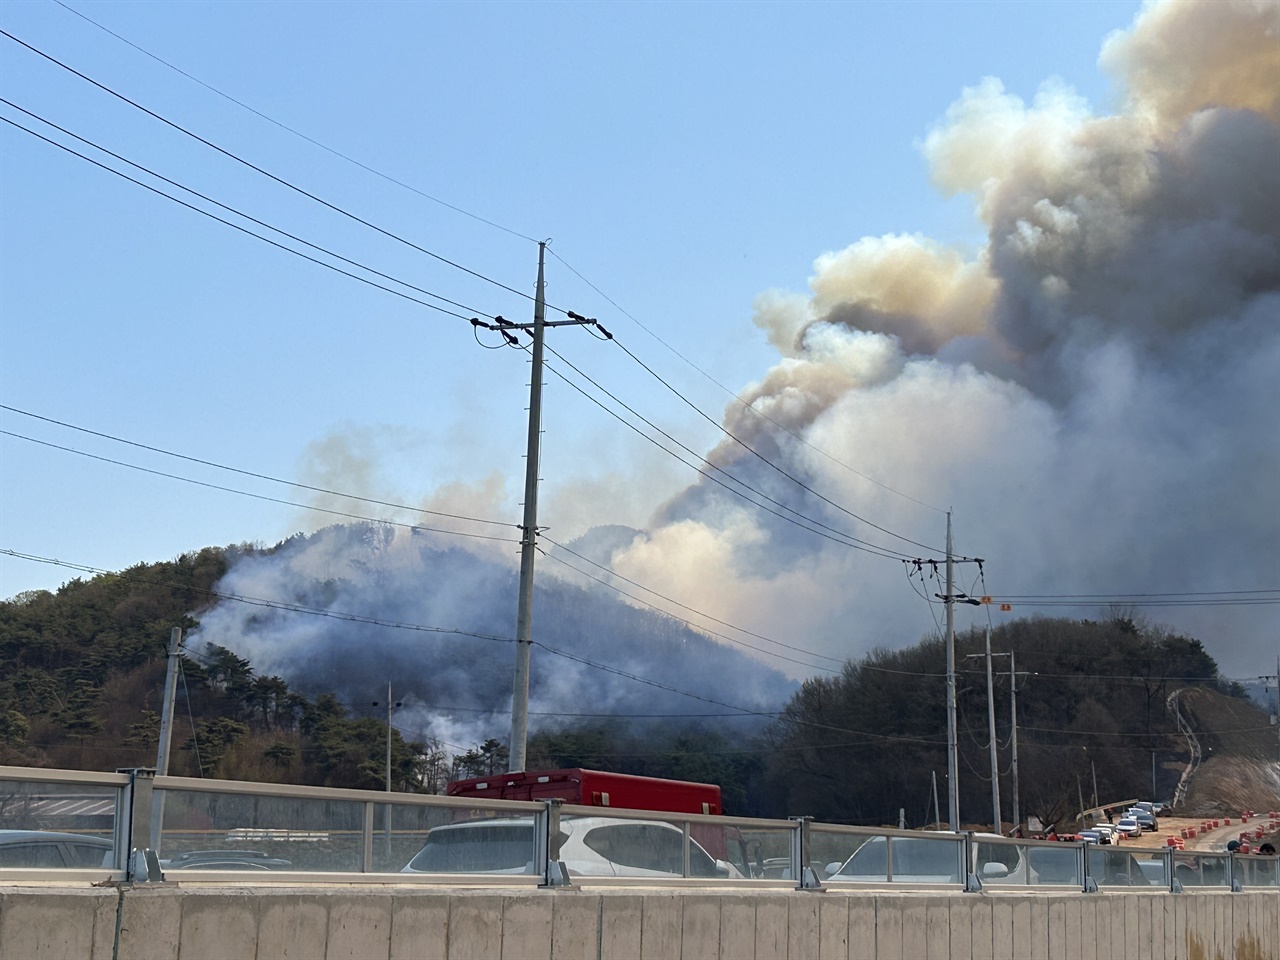 2일 충남 홍성군에서 산불이 발생했다. 홍성군에 따르면 화재는 이날 오전 11시경 홍성군 서부면 중리 538번지 일원에서 발생했다. 